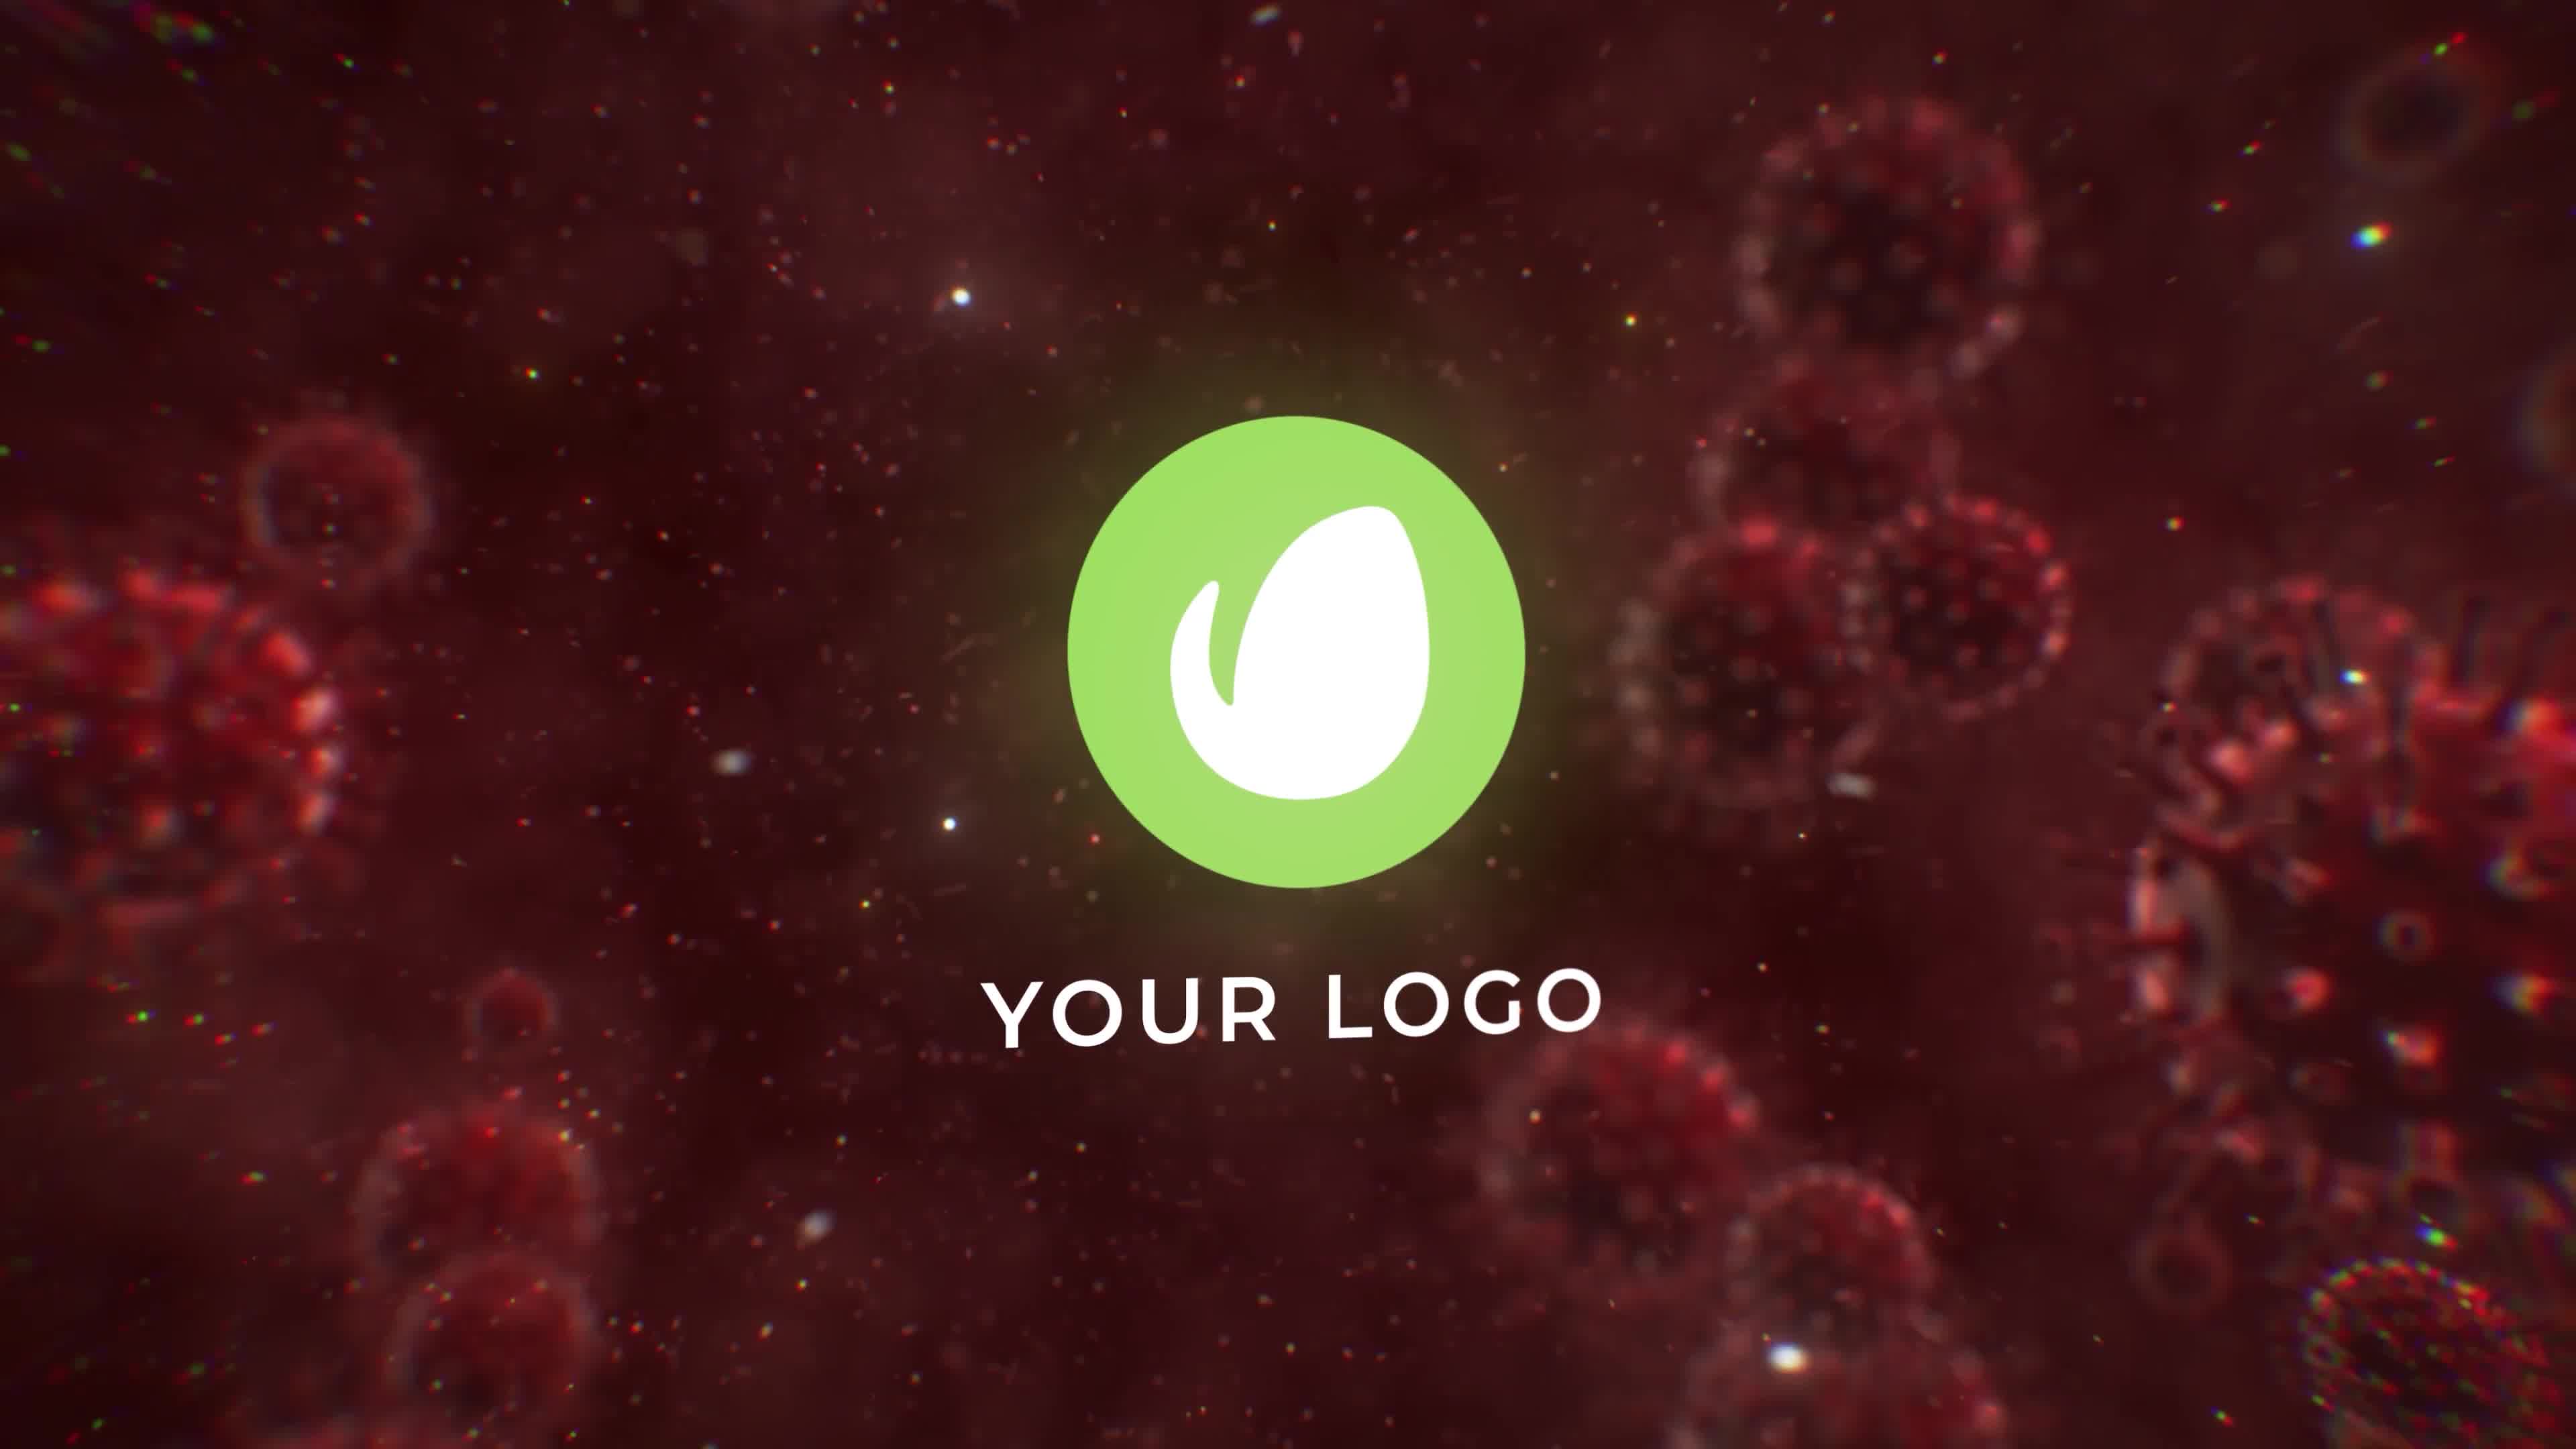 Virus Destruction Logo Reveal Videohive 26328449 Premiere Pro Image 8